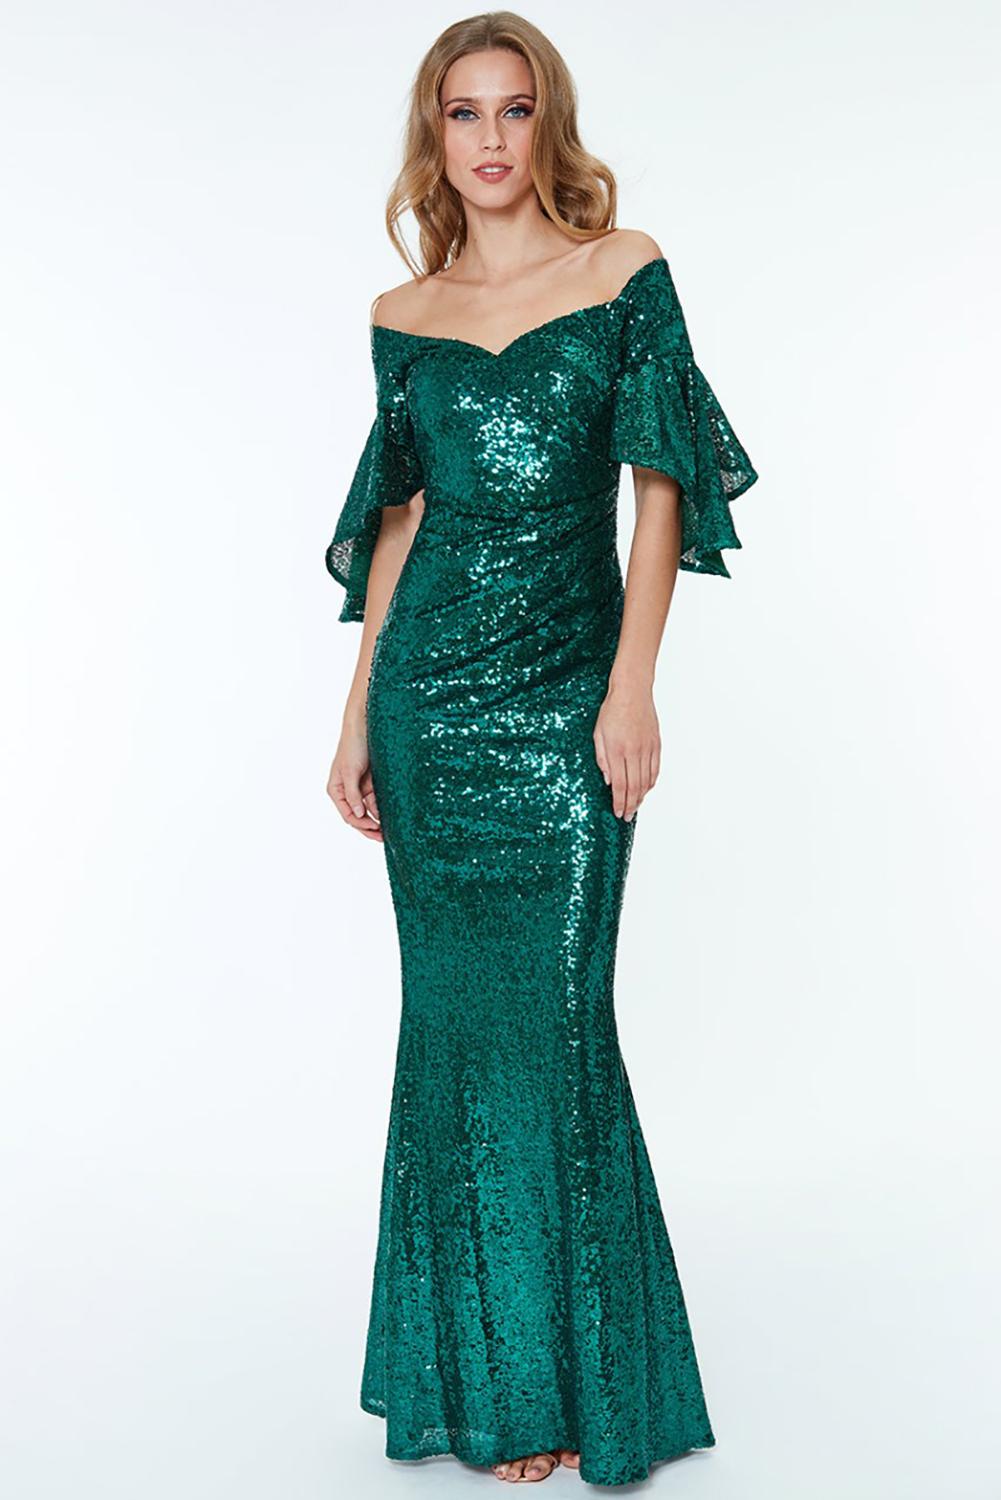 Green Off The Shoulder Sequined Maxi Dress Sequin Dresses JT's Designer Fashion